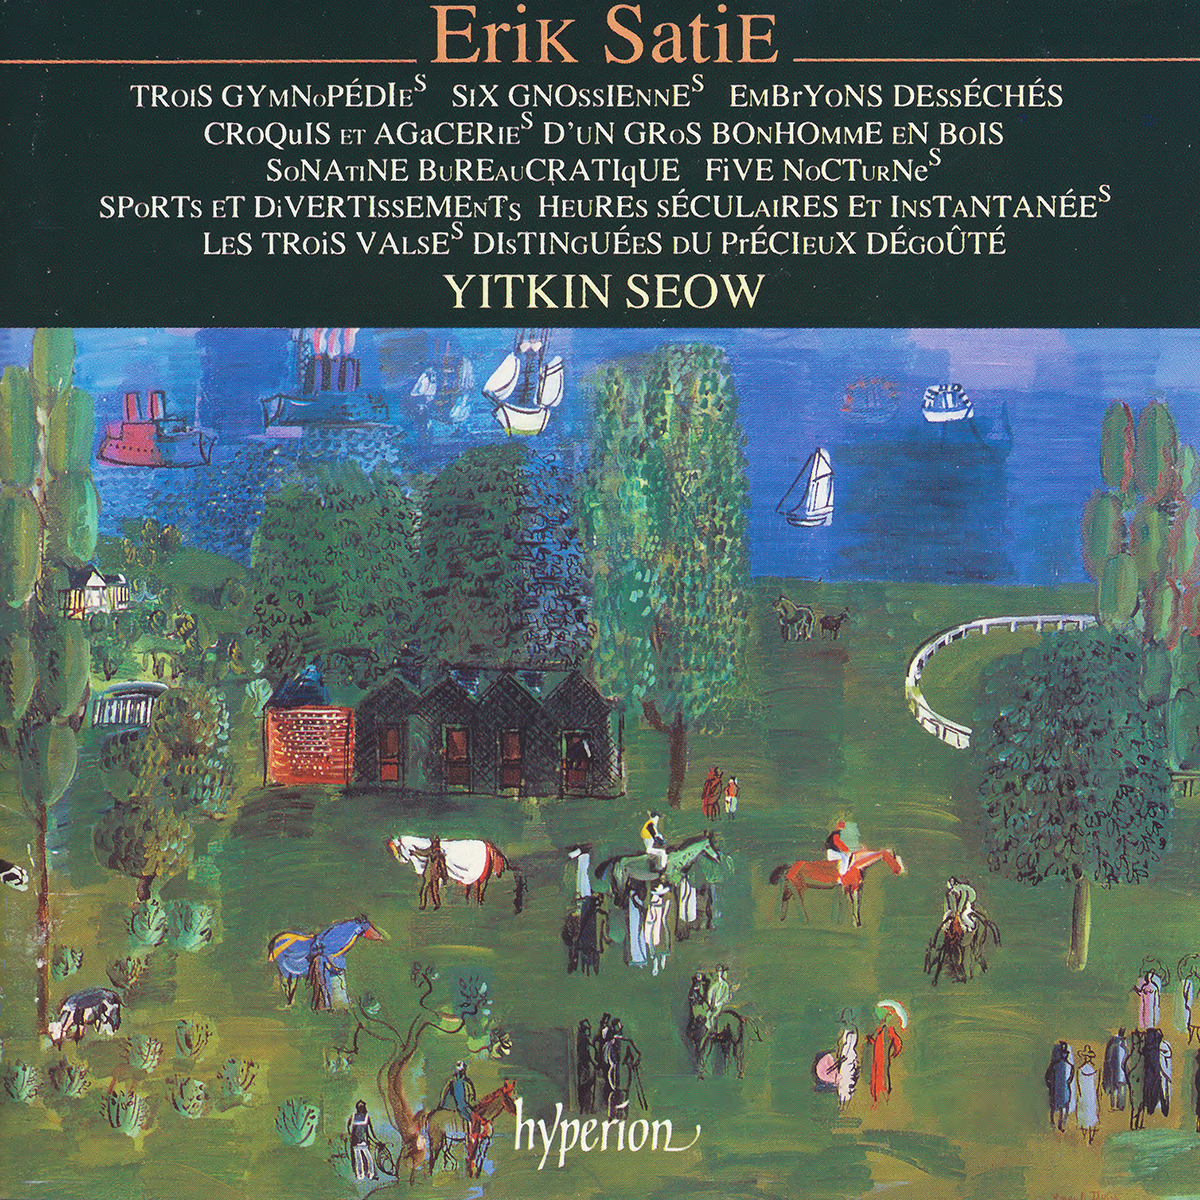 Erik Satie: Piano Music